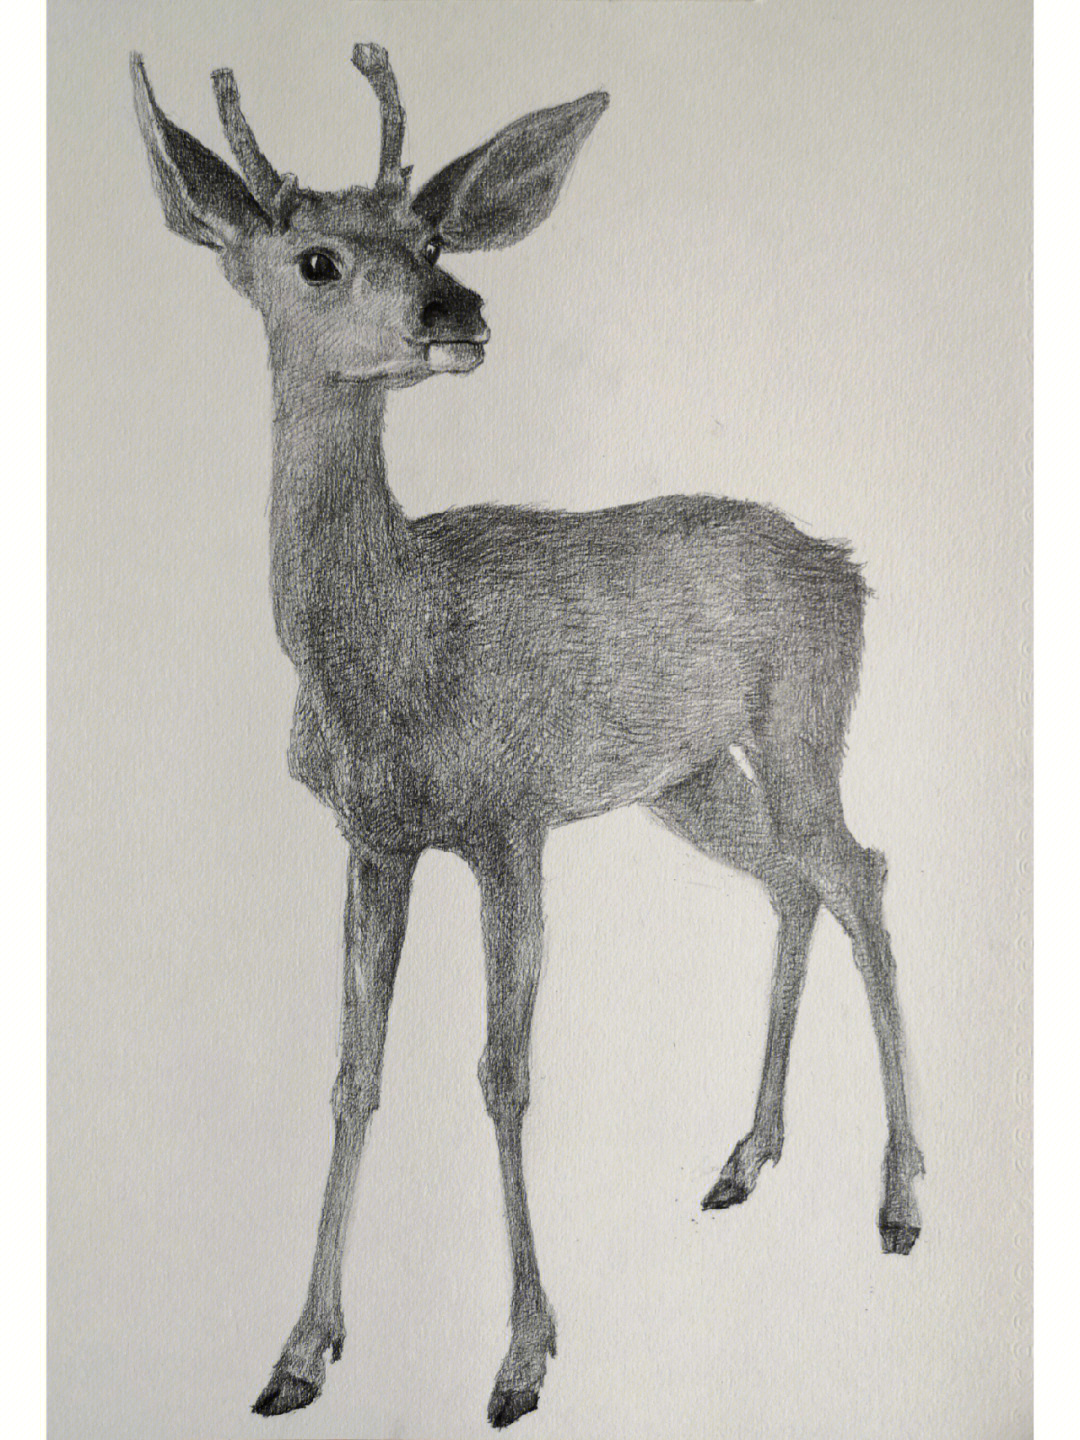 鹿的素描简笔图片